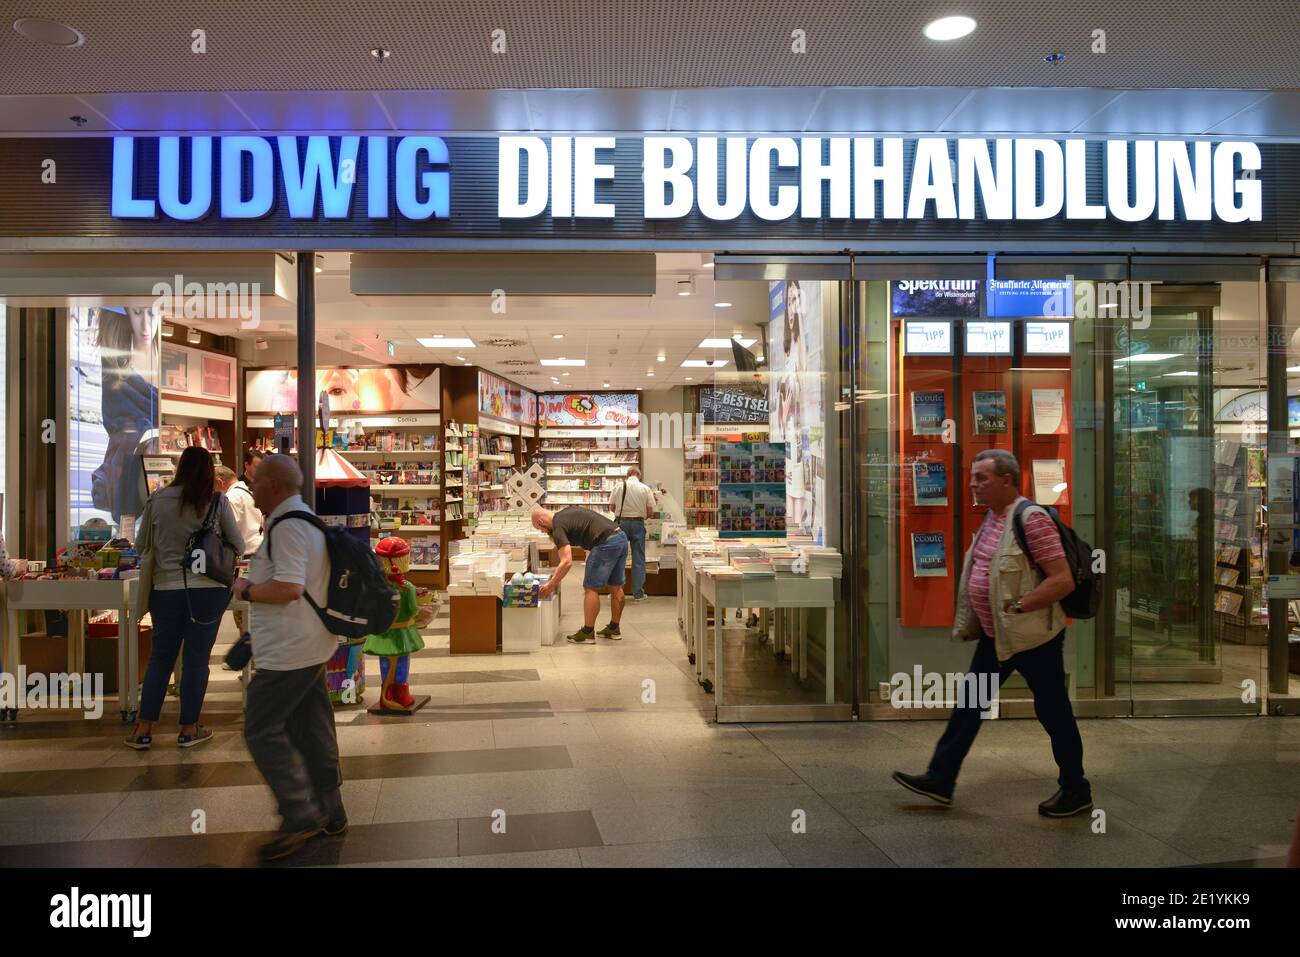 Buchhandlung Ludwig, Bahnhof Friedrichstrasse, Mitte, Berlin, Deutschland Stock Photo